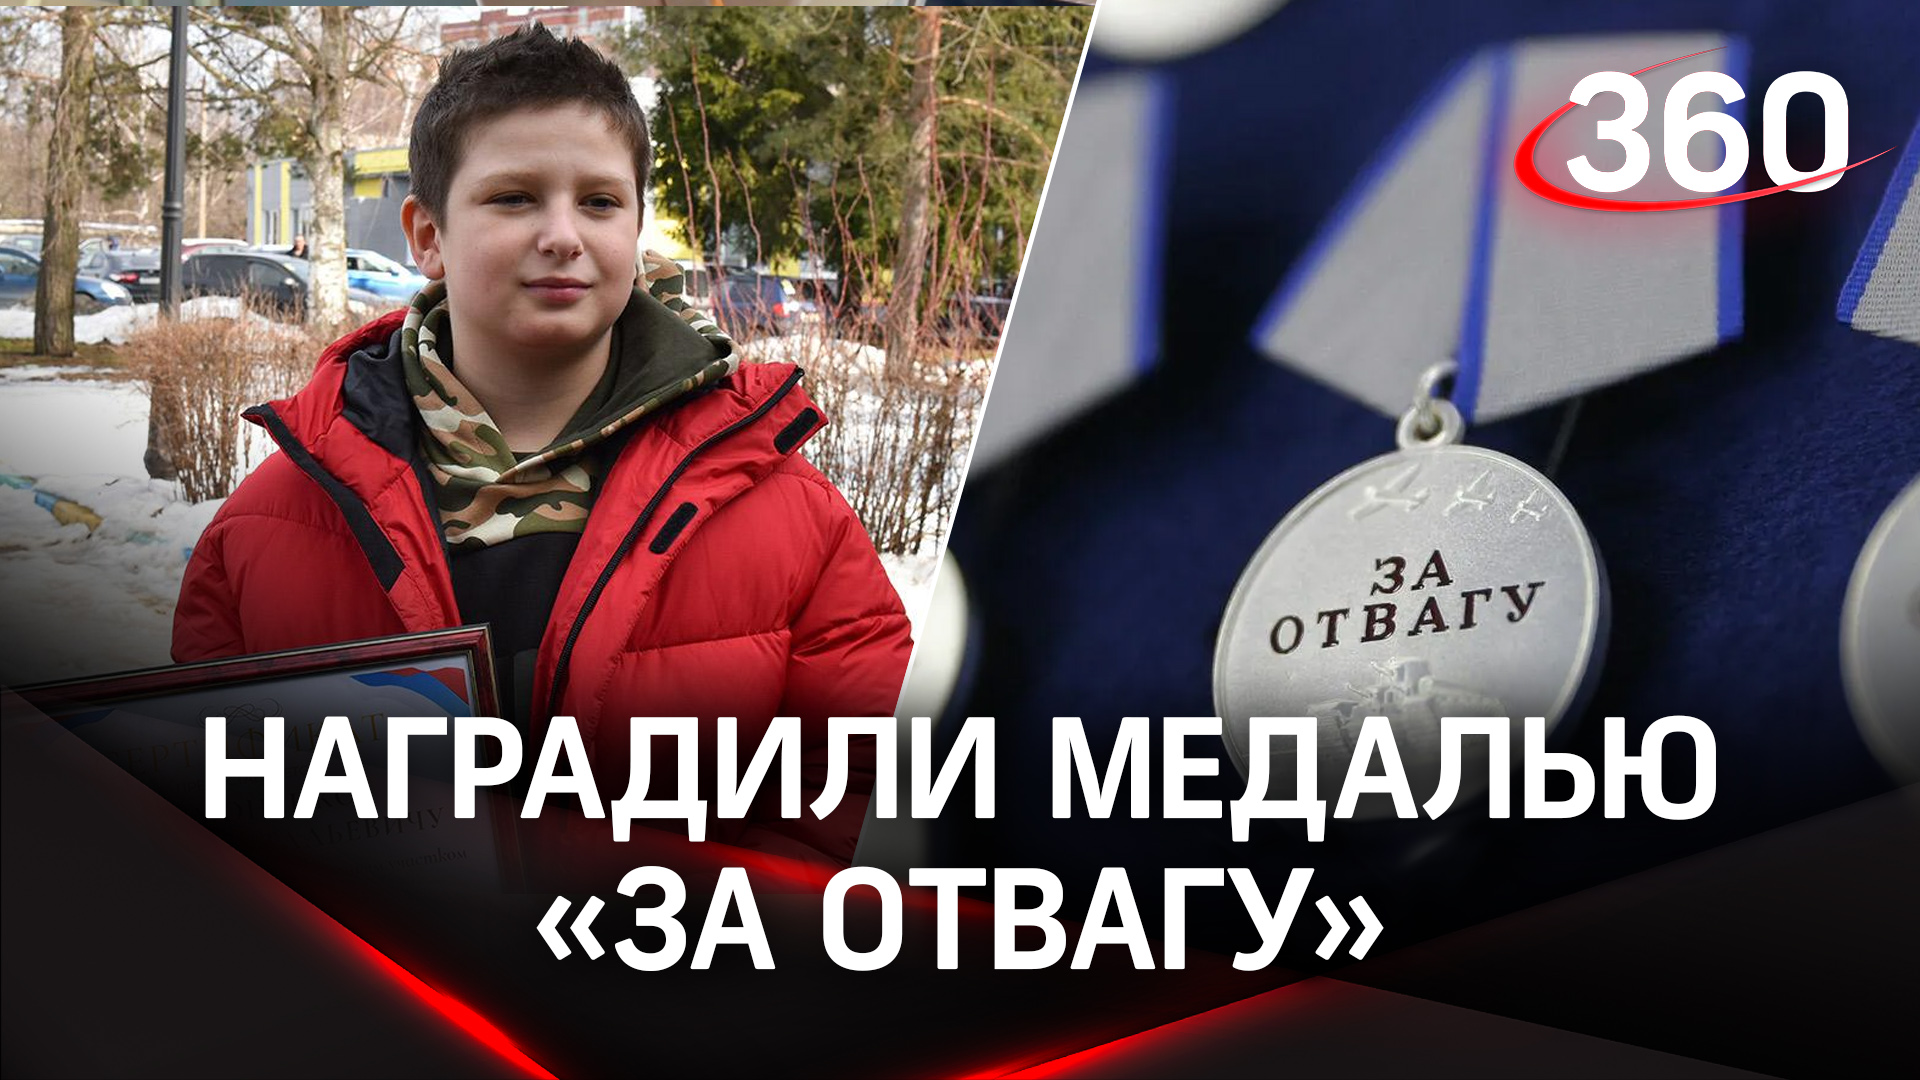 Путин наградил медалью «За отвагу» мальчика Федю, который спас девочек от украинских диверсантов